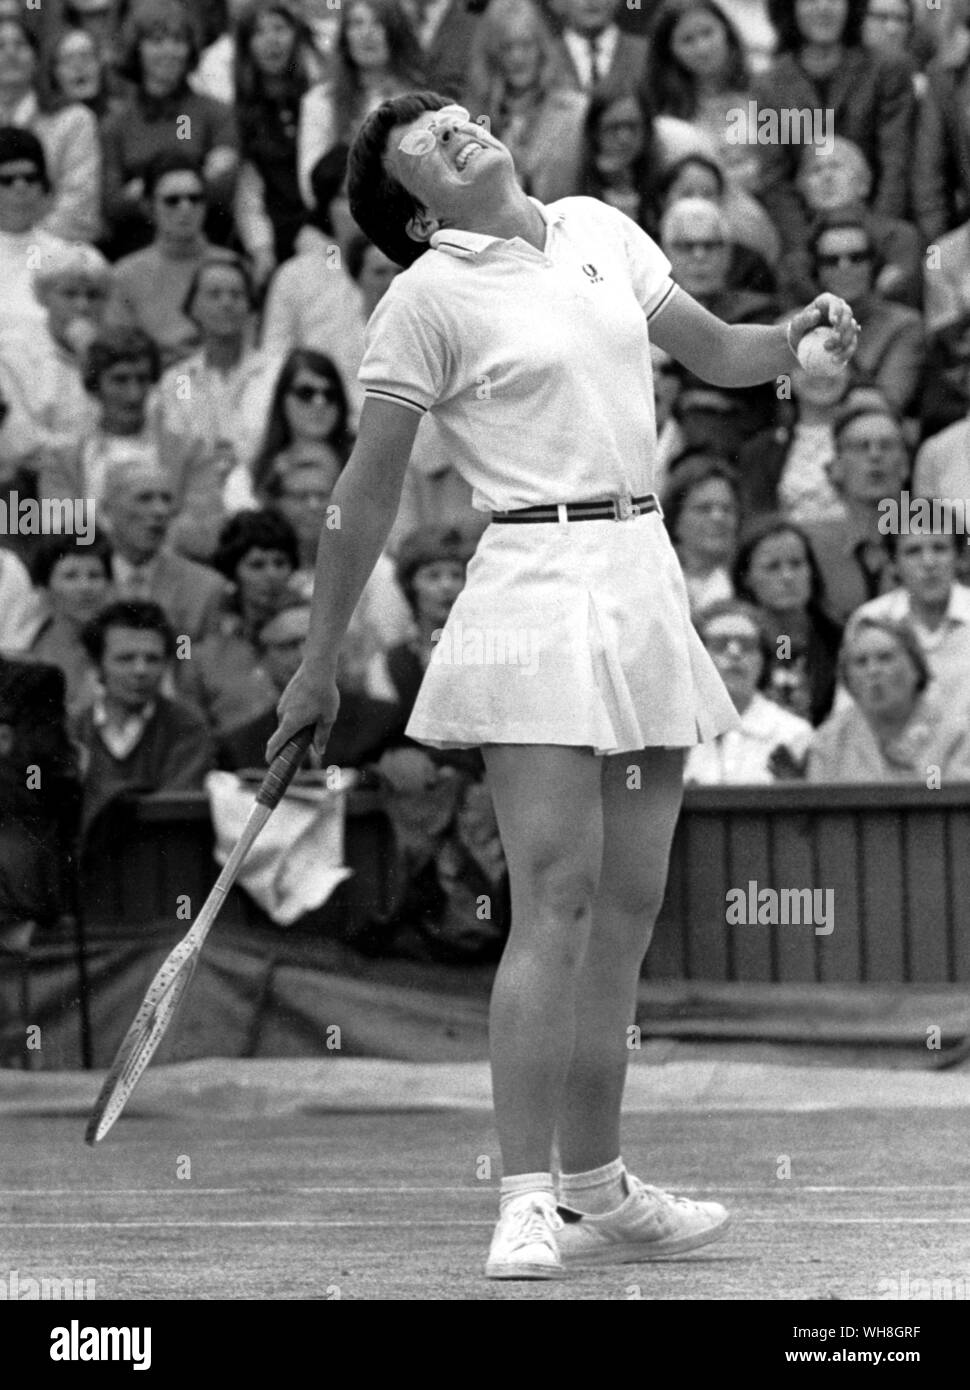 Billie Jean King. Ein Pass, der verletzt. Während ihrer Karriere gewann sie 12 Grand Slam Titel singles, 14 Grand Slam Titel für Frauen verdoppelt, und 11 Grand Slam Titel gemischtes Doppel. Sie ist in der Regel als einer der größten Tennisspieler und weibliche Athleten in der Geschichte zu sein. Die Enzyklopädie von Tennis Seite 162. Stockfoto